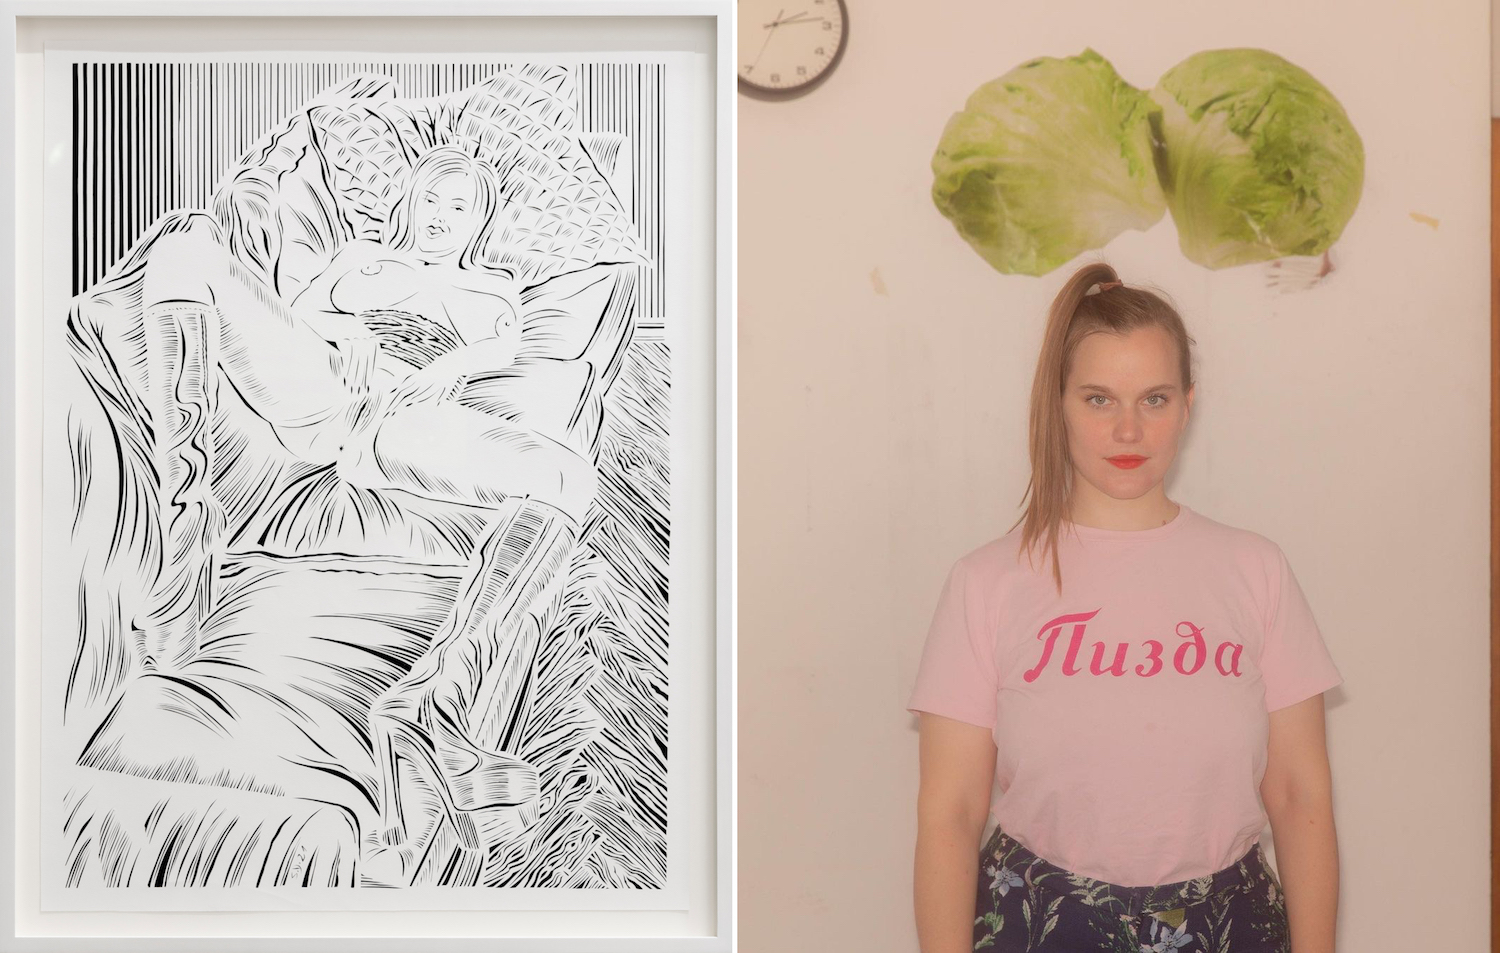 Links: Scherenschnitt von Sonja Yakovleva zeigt masturbierende Frau auf einer Couch. Rechts: Porträt von Sonja Yakovleva in rosafarbenem T-Shirt.